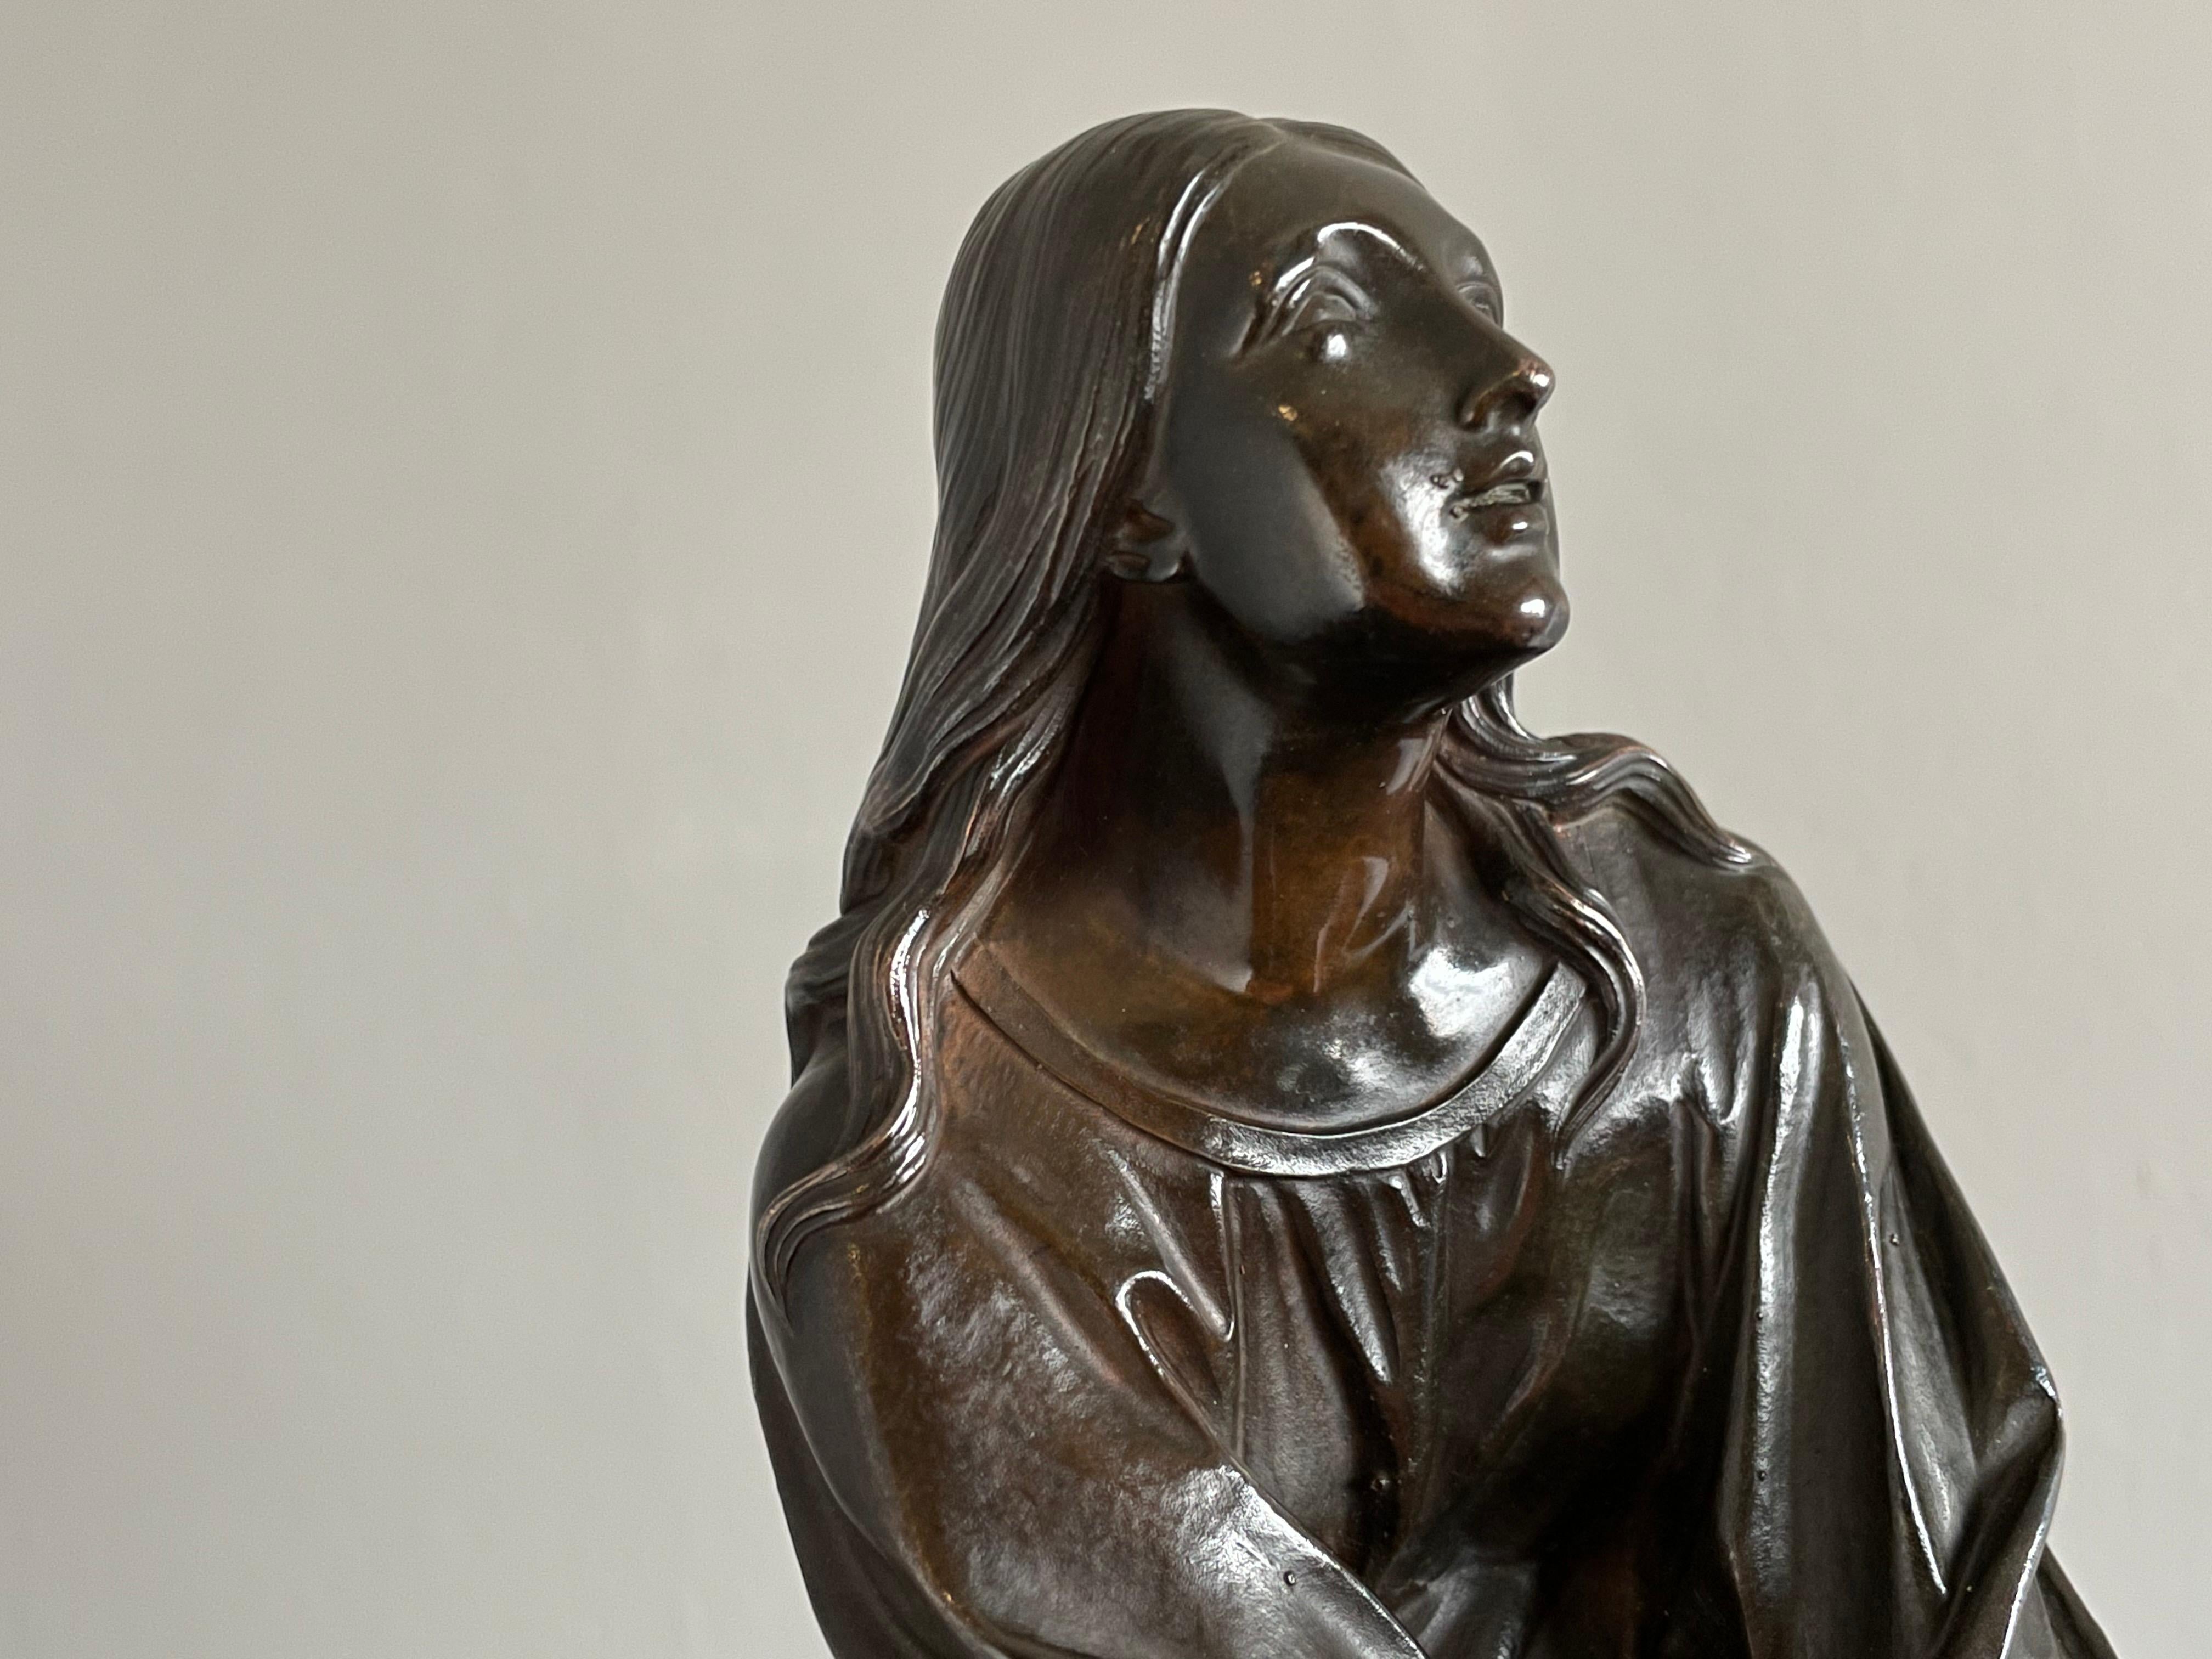 Ce bronze ancien de Jean François Théodore Gechter est de qualité musée.

Cet étonnant ange en bronze est l'œuvre de l'un des plus talentueux sculpteurs français du début du XXe siècle. Jean François Théodore Gechter (1796-1844) a créé cette pièce